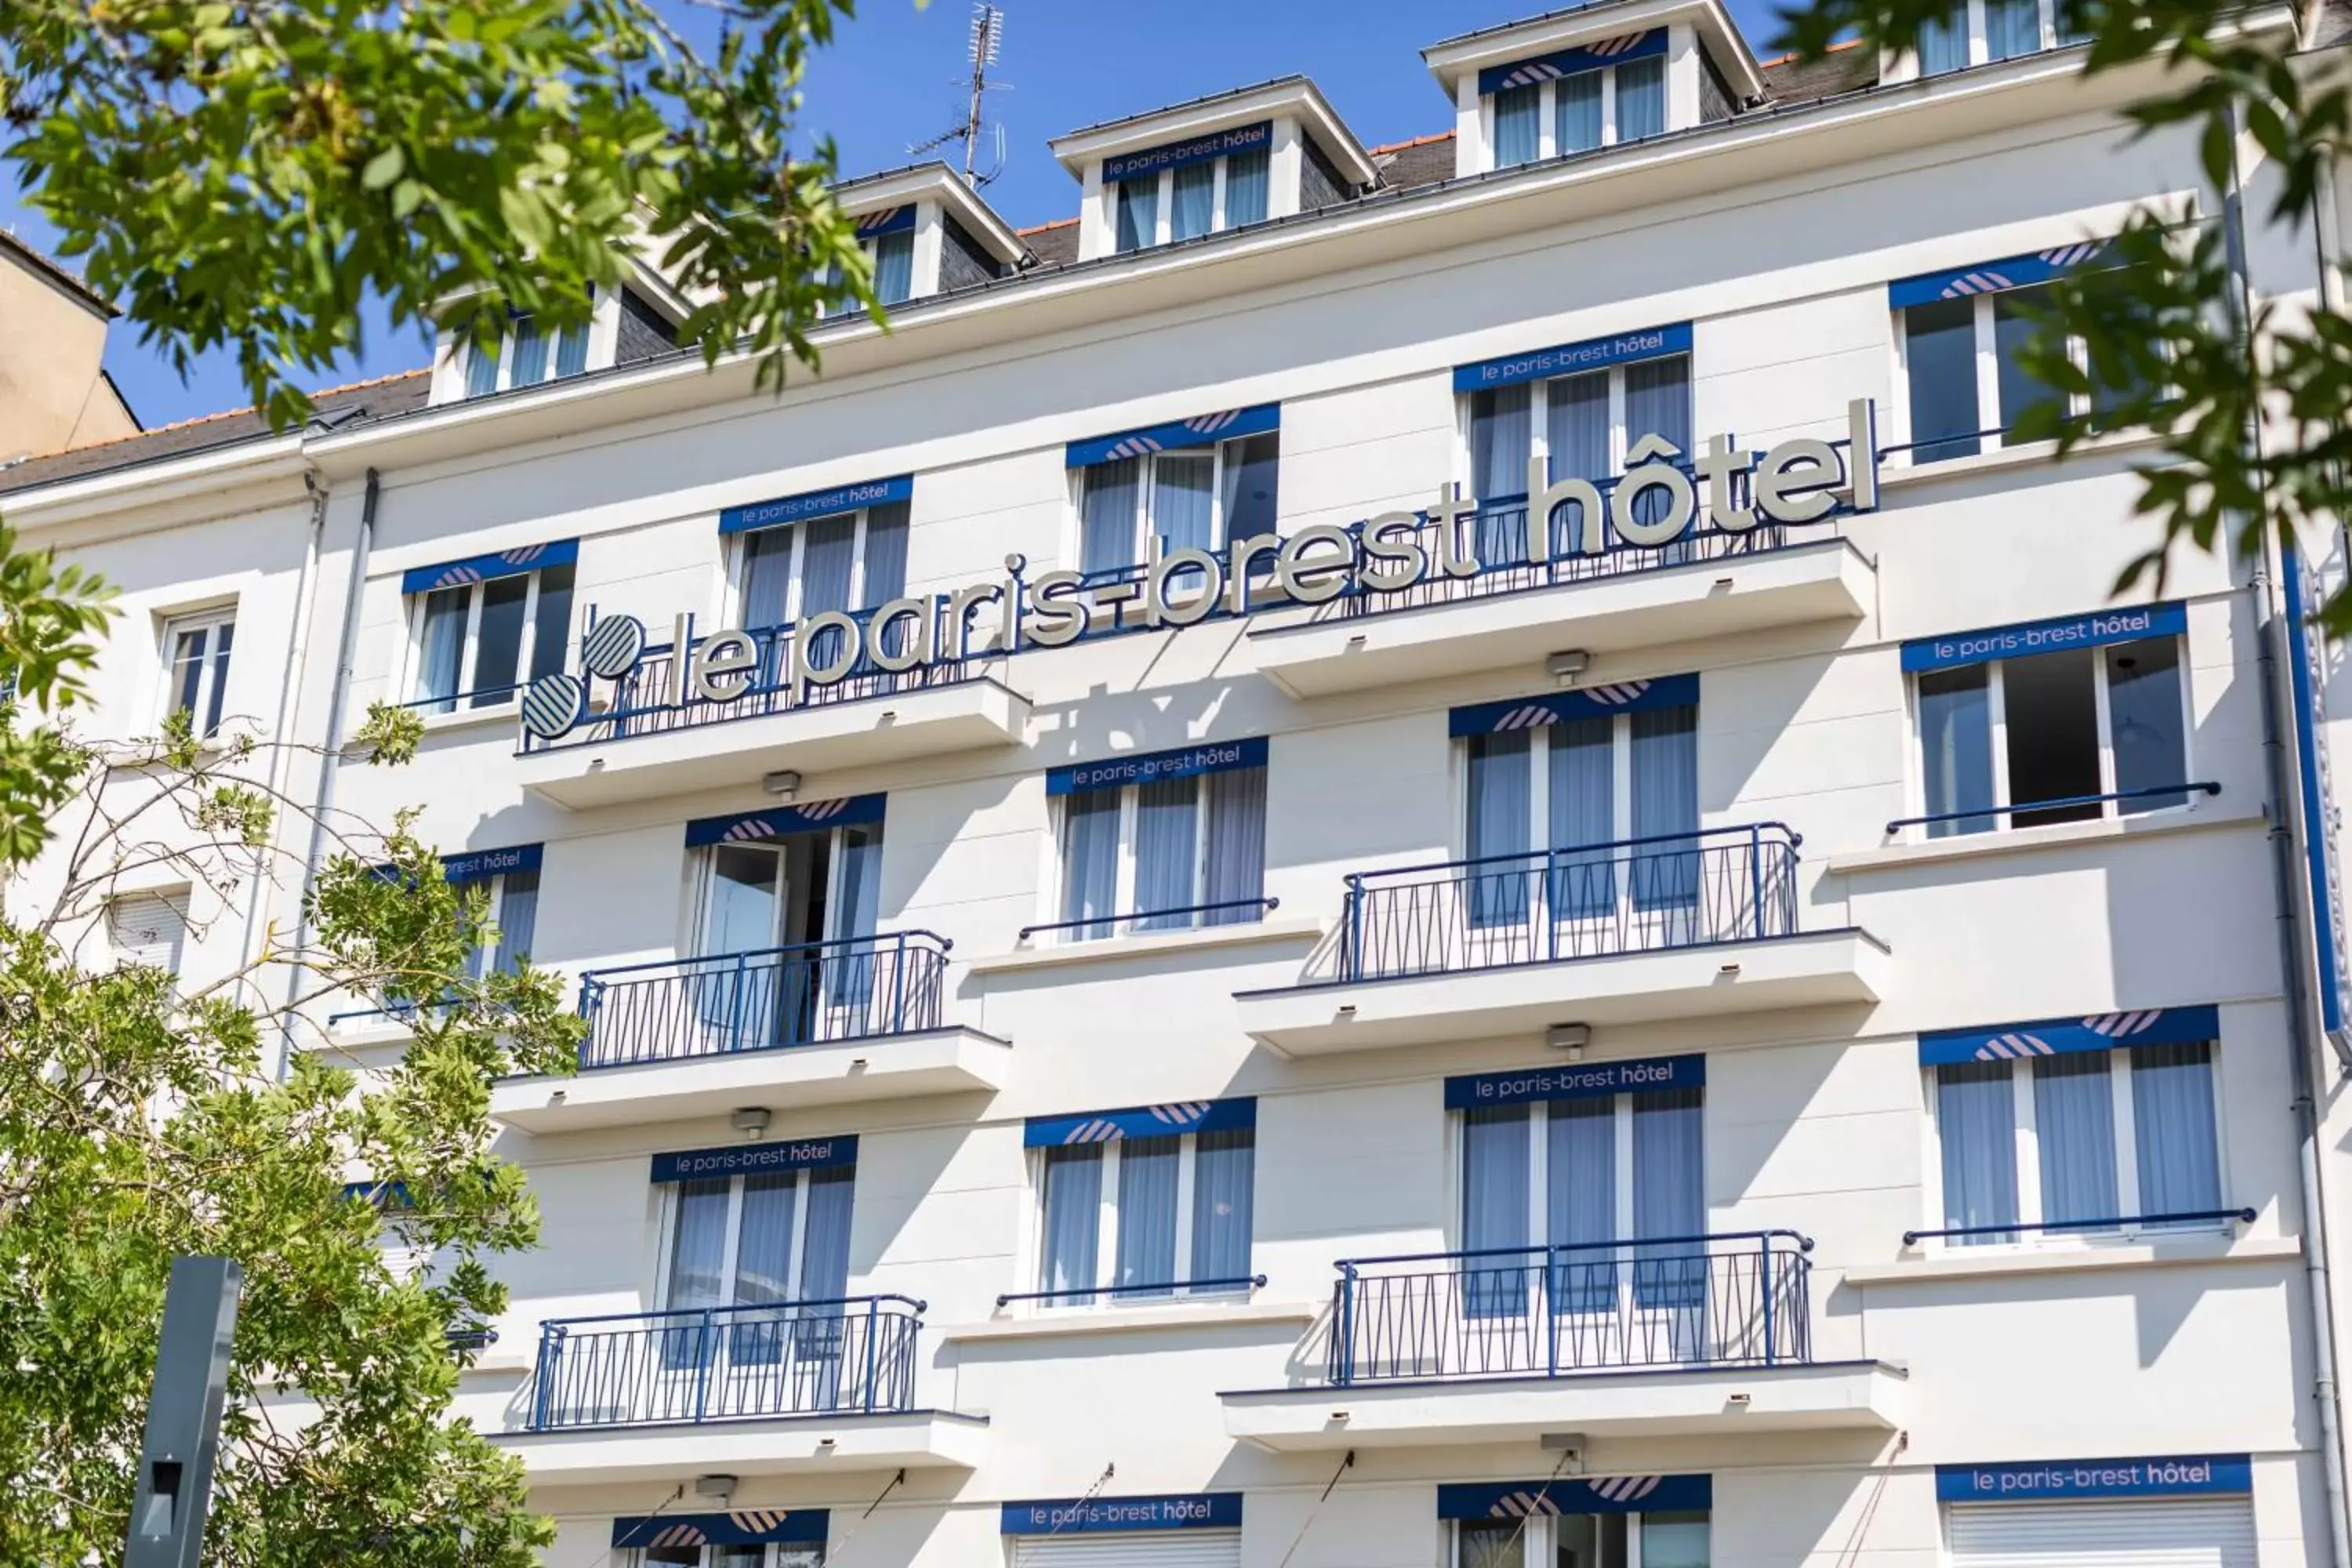 Property Building in le paris brest hotel